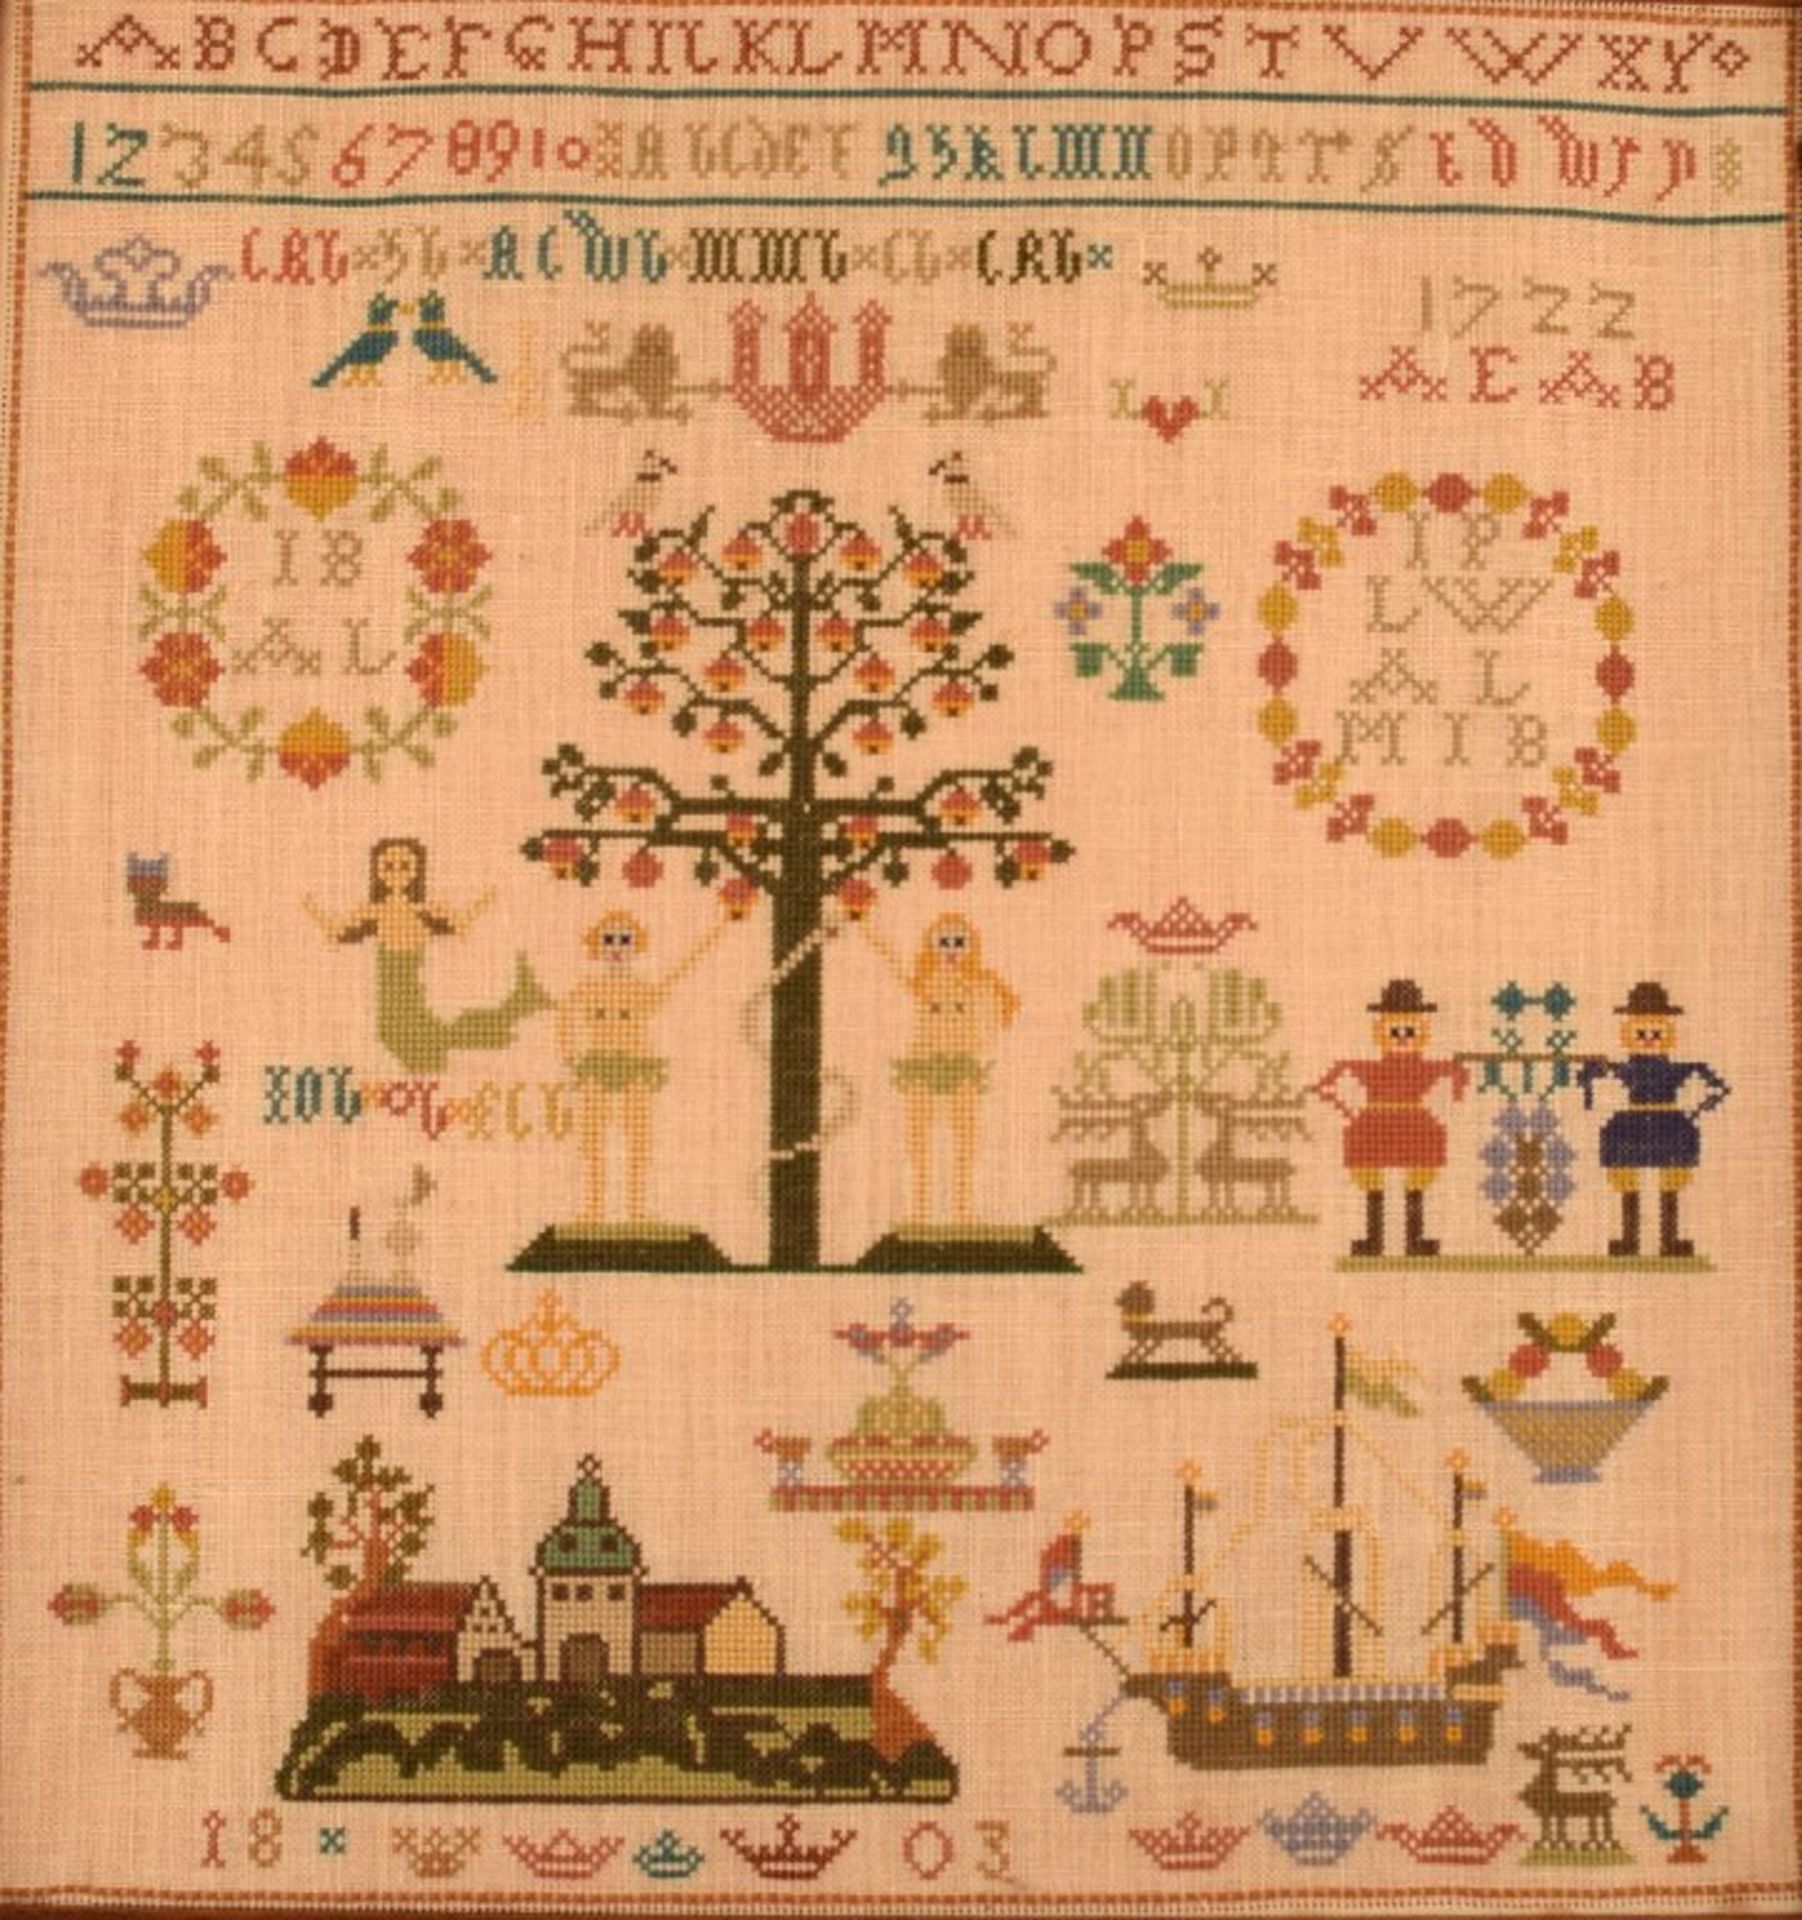 Historische Stickerei von 1803. Maß ca. 40x38cm. Rahmen. KOSTENLOSER VERSAND INNERHALB - Image 2 of 2